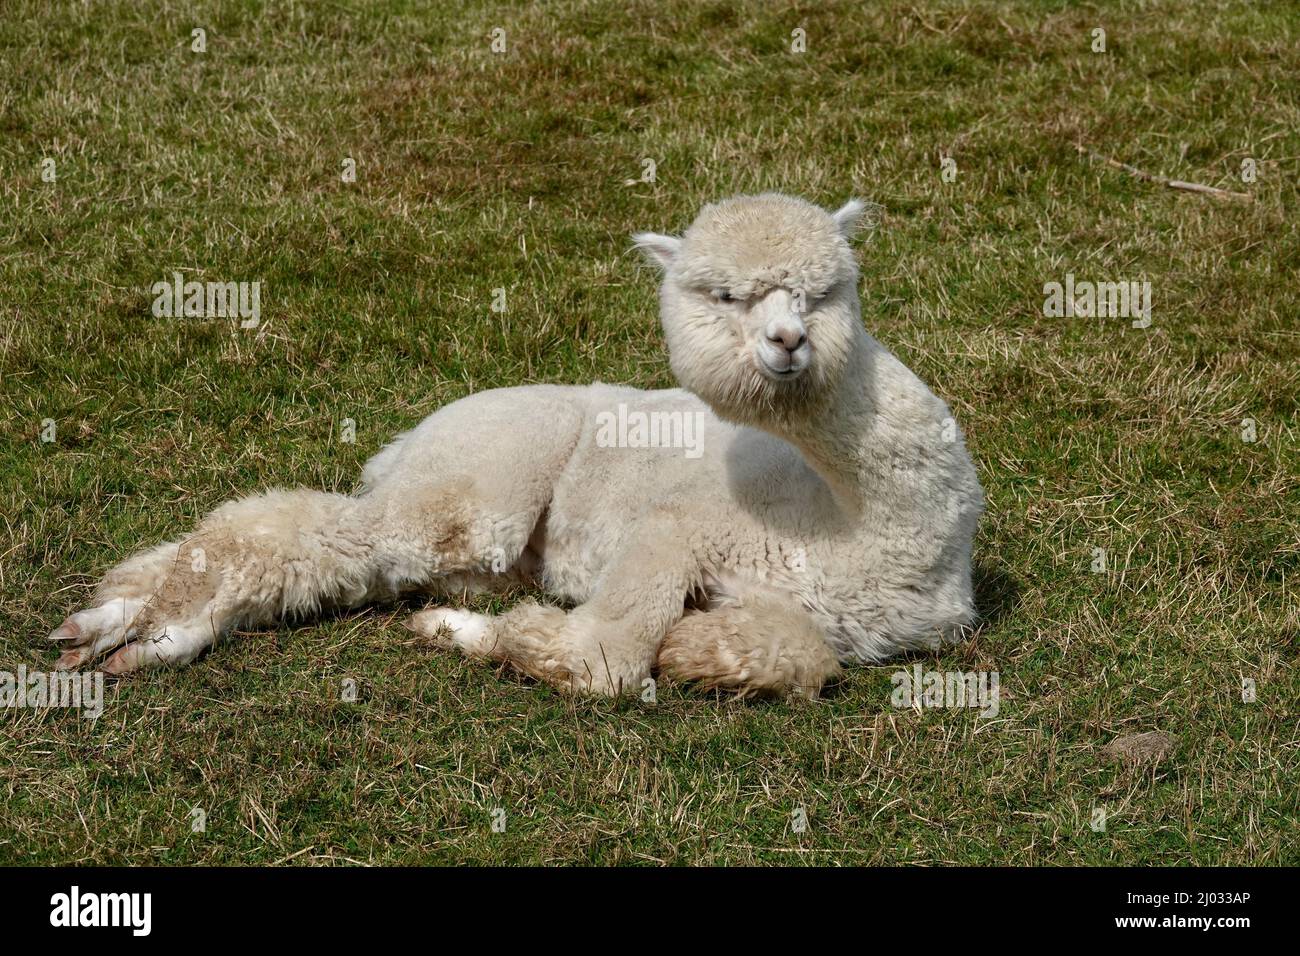 Niedliche Erwachsene Lama Alpaka liegen auf grünem Gras und starren auf die Kamera. Stockfoto